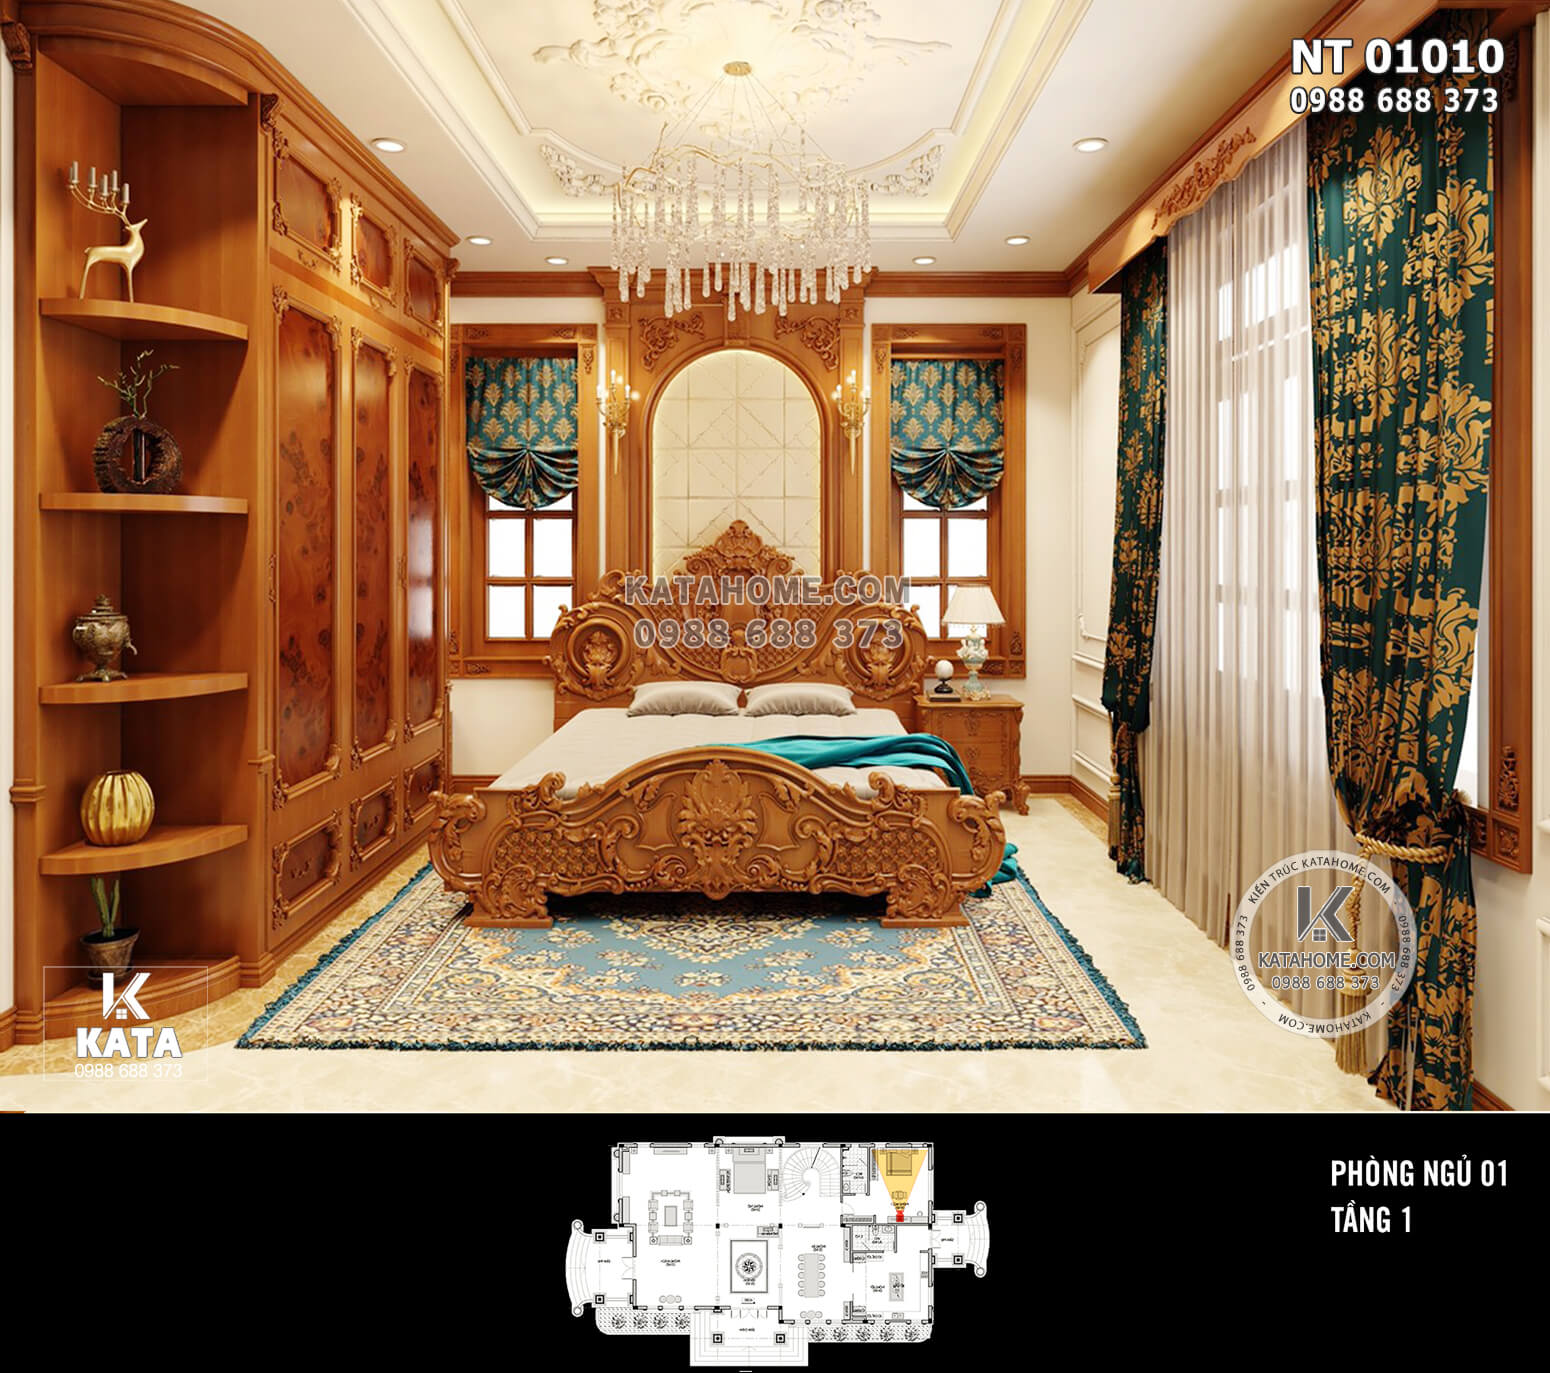 Hình ảnh: Không gian nội thất phòng ngủ tân cổ điển hoàng gia - NT 01010